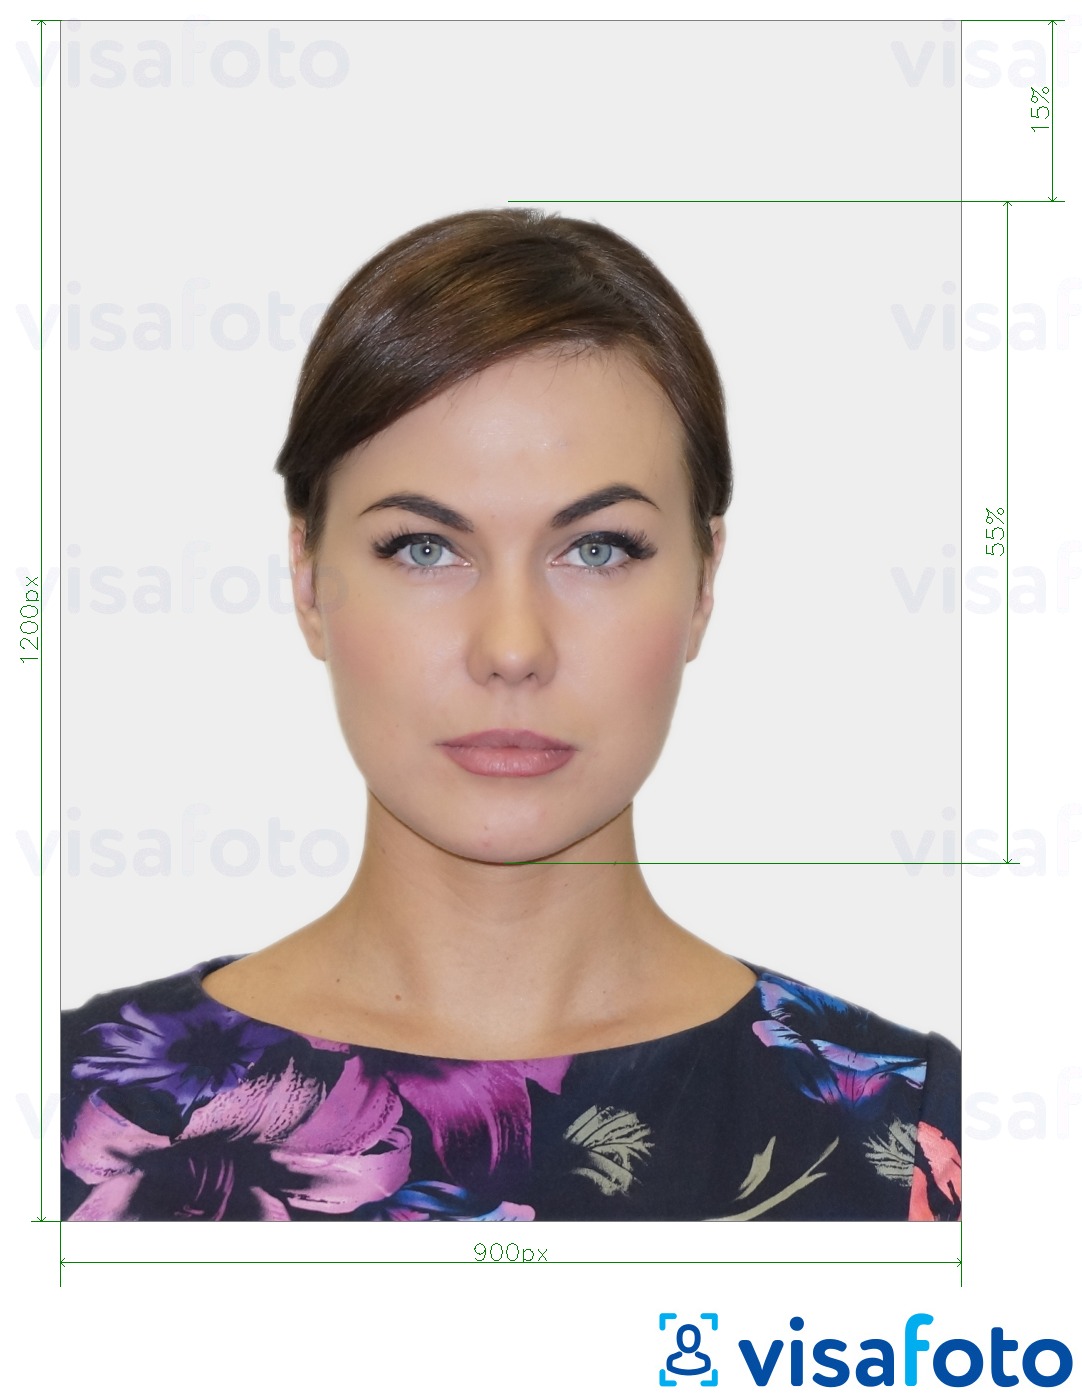 सटीक आकार विनिर्देश के साथ यूके पासपोर्ट ऑनलाइन के लिए तस्वीर का उदाहरण